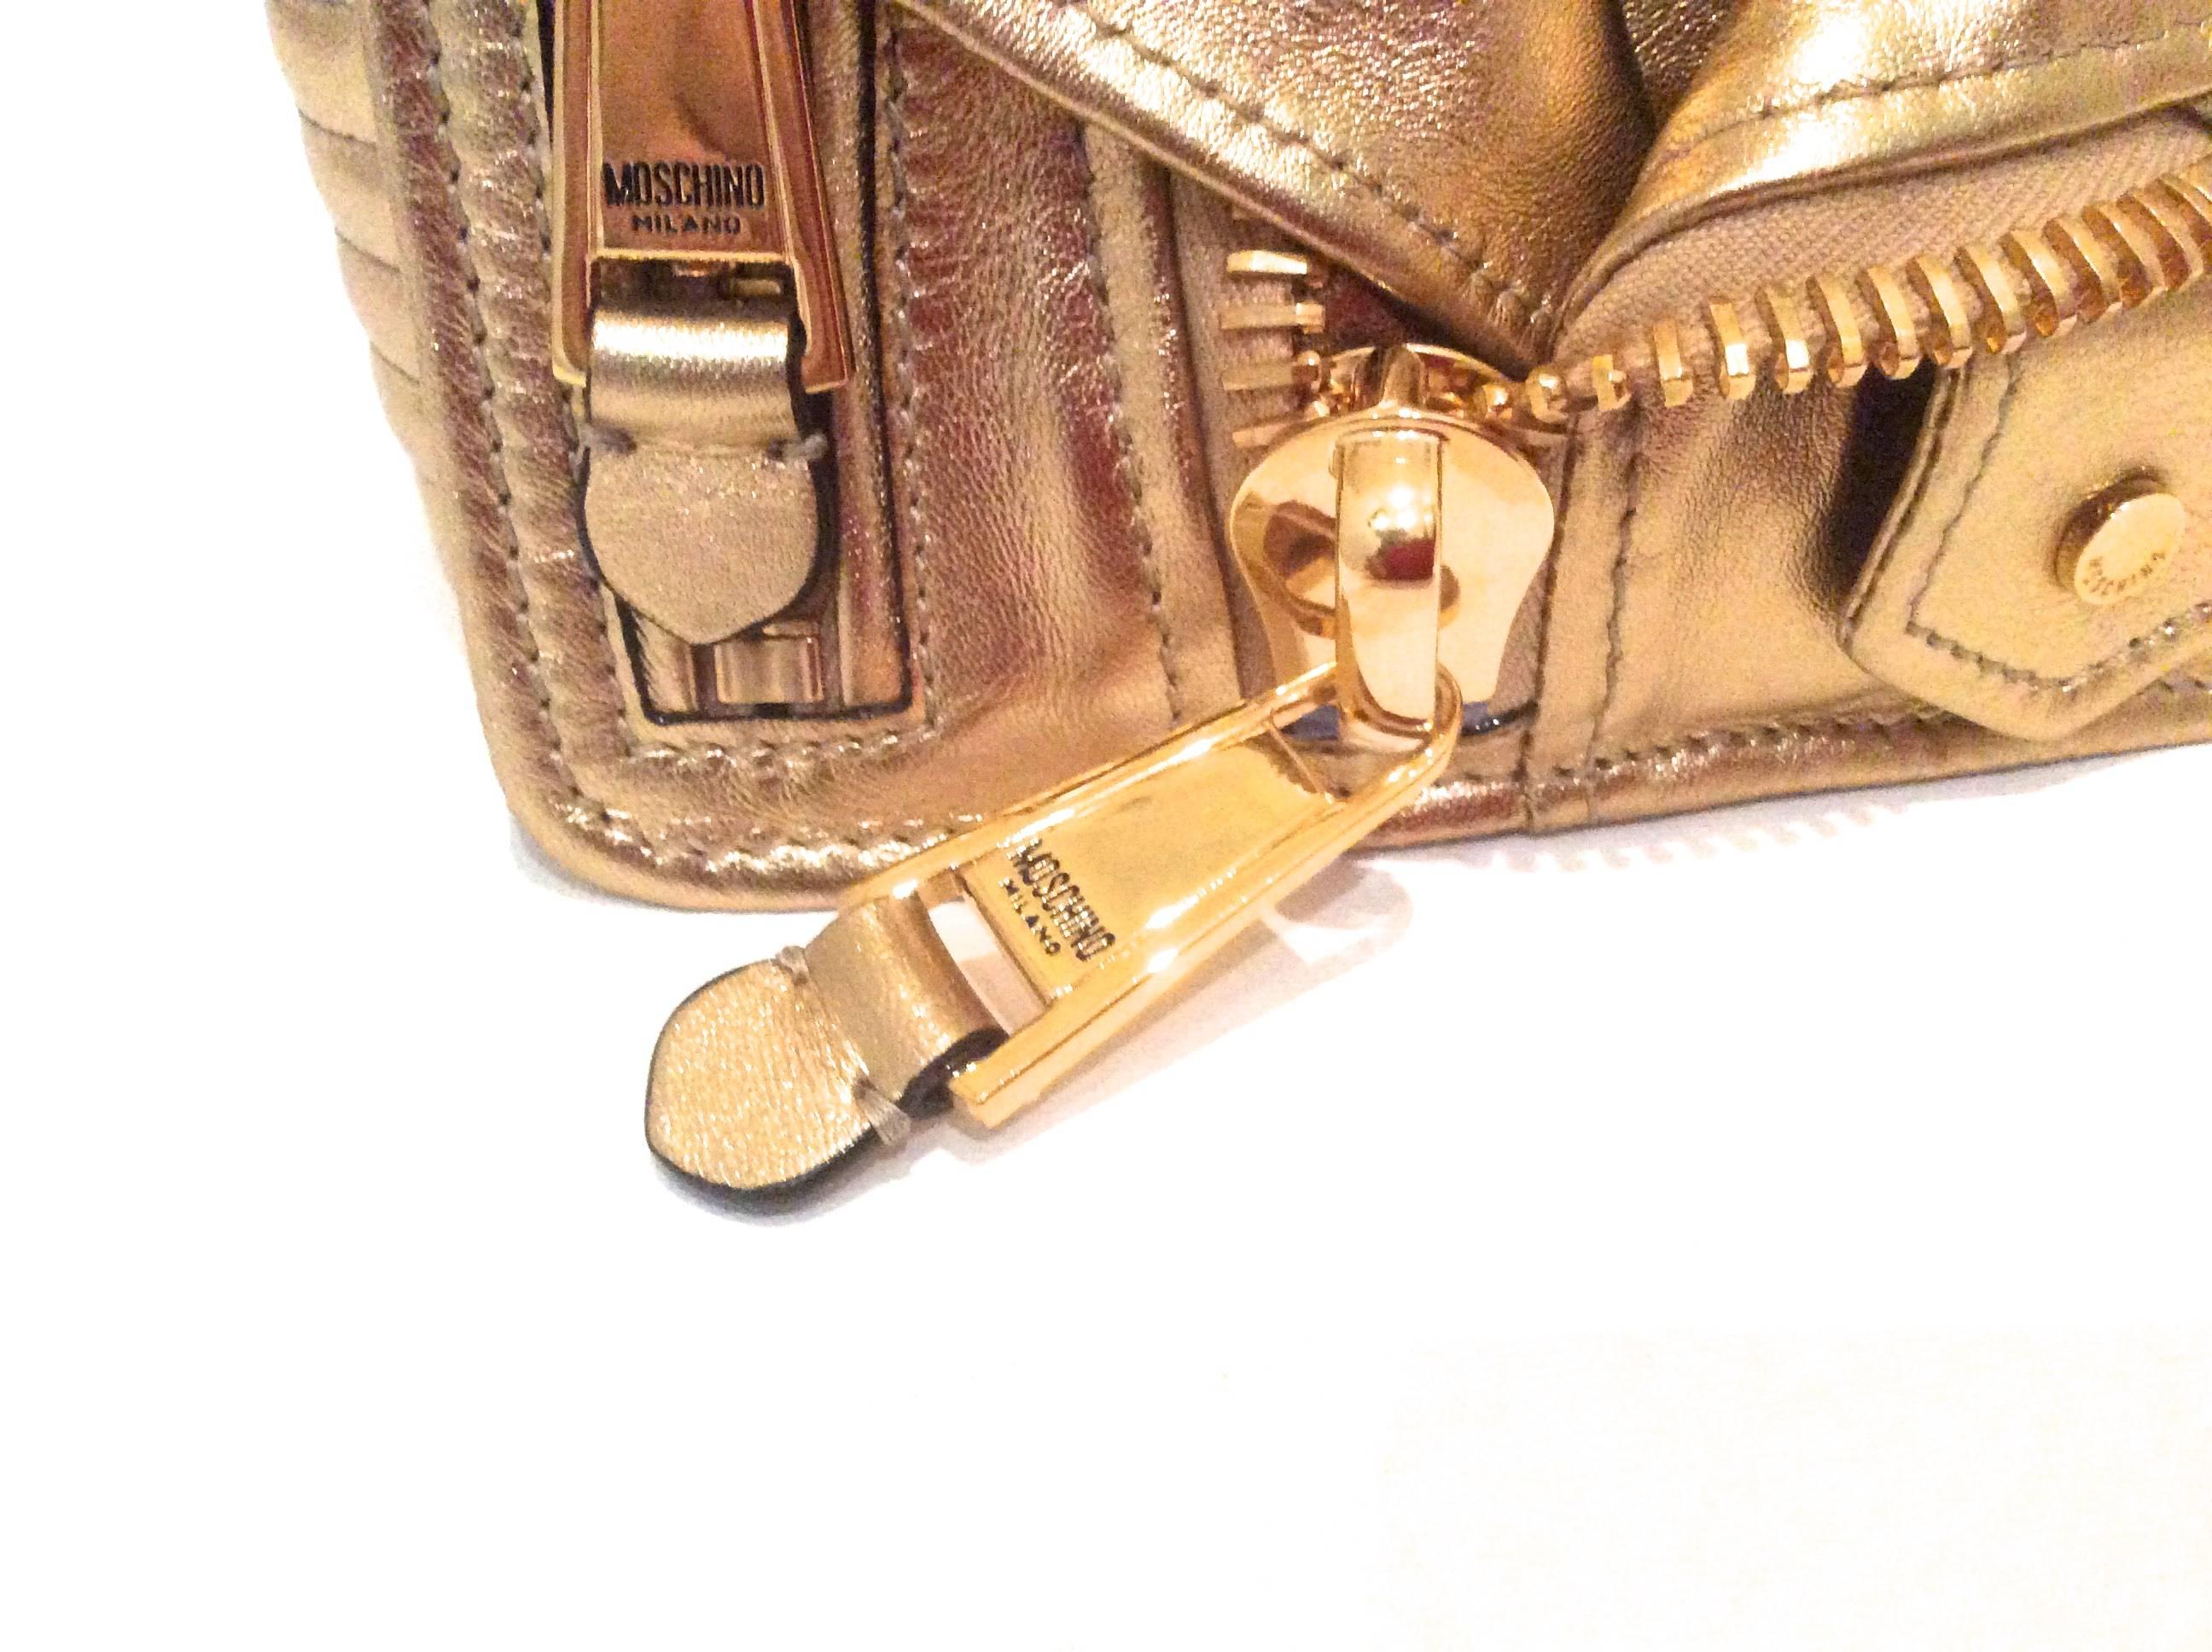 Moschino Gold Biker Jacket Handbag - Rare 2